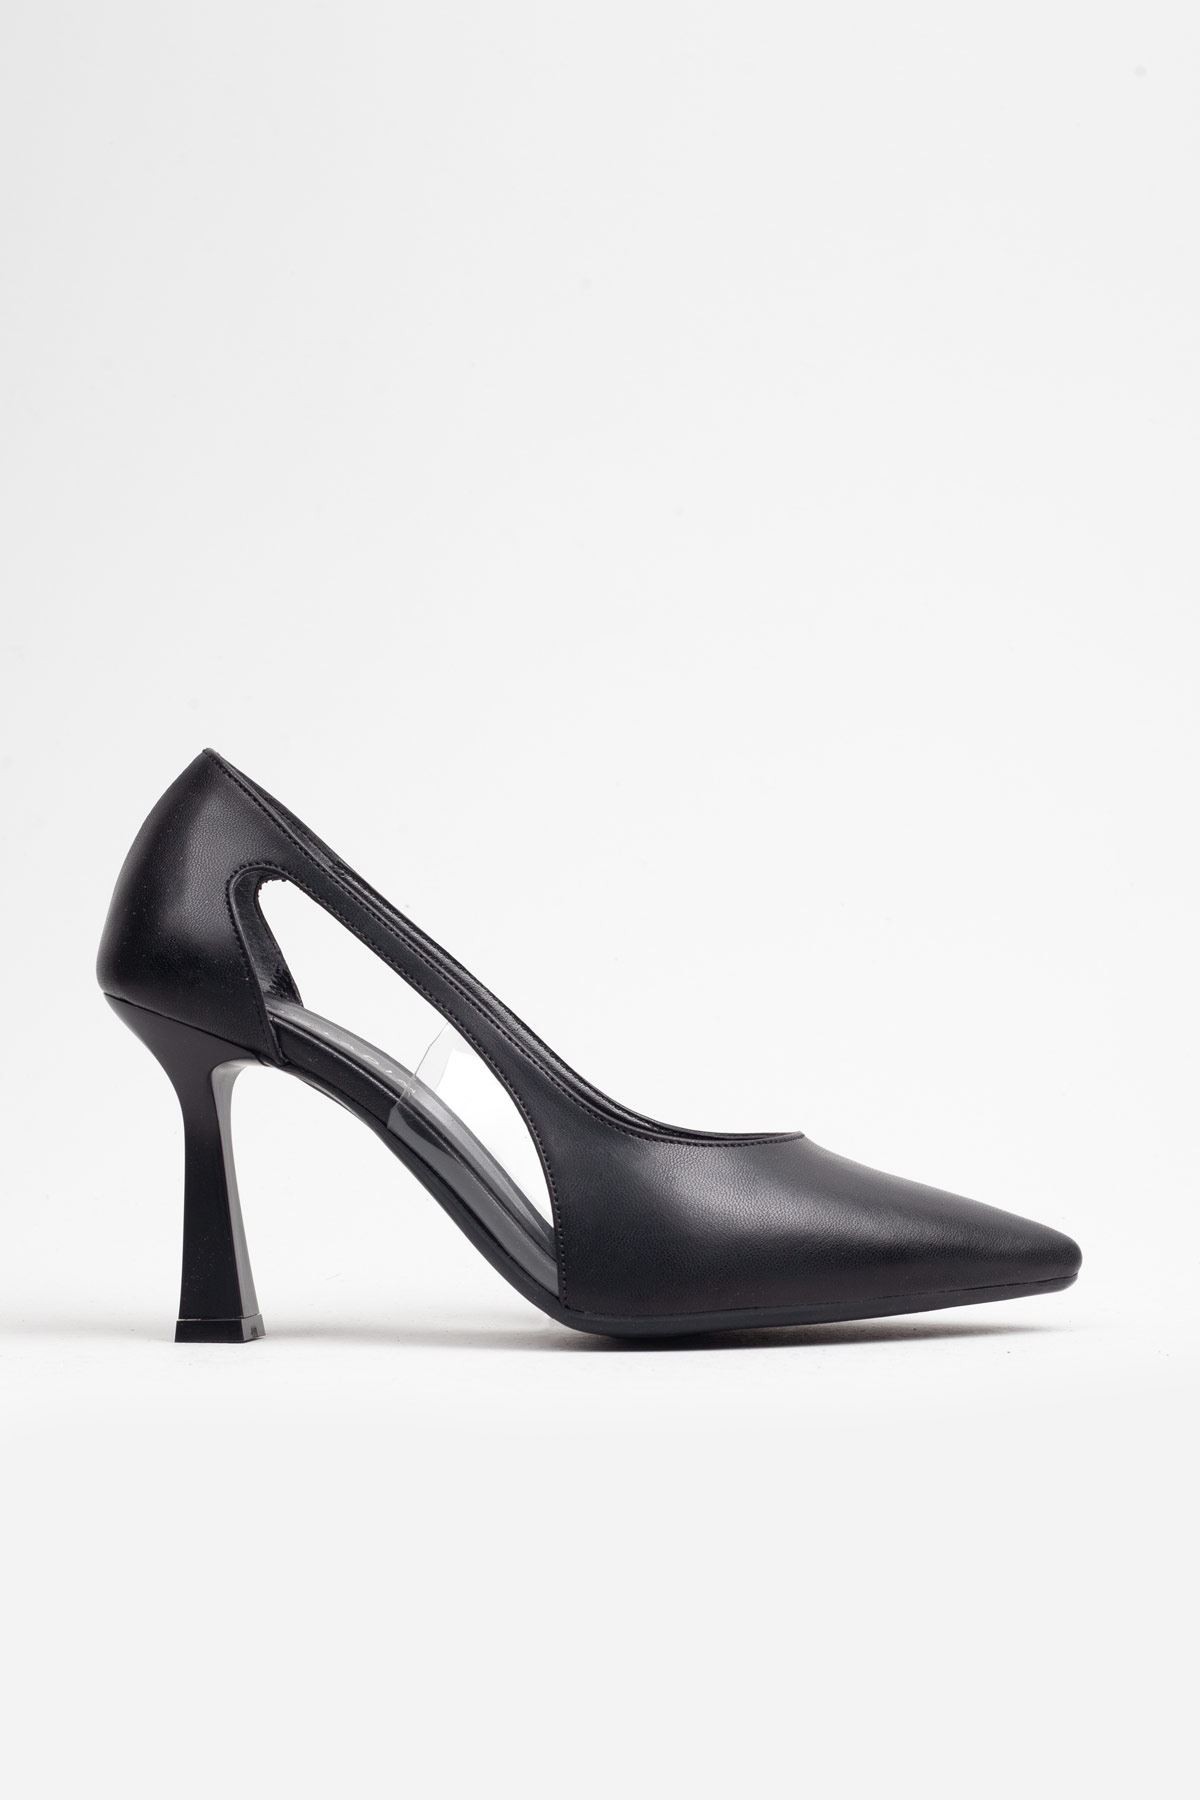 Kadın Yanları Açık Siyah Renk Klasik Topuklu Ayakkabı